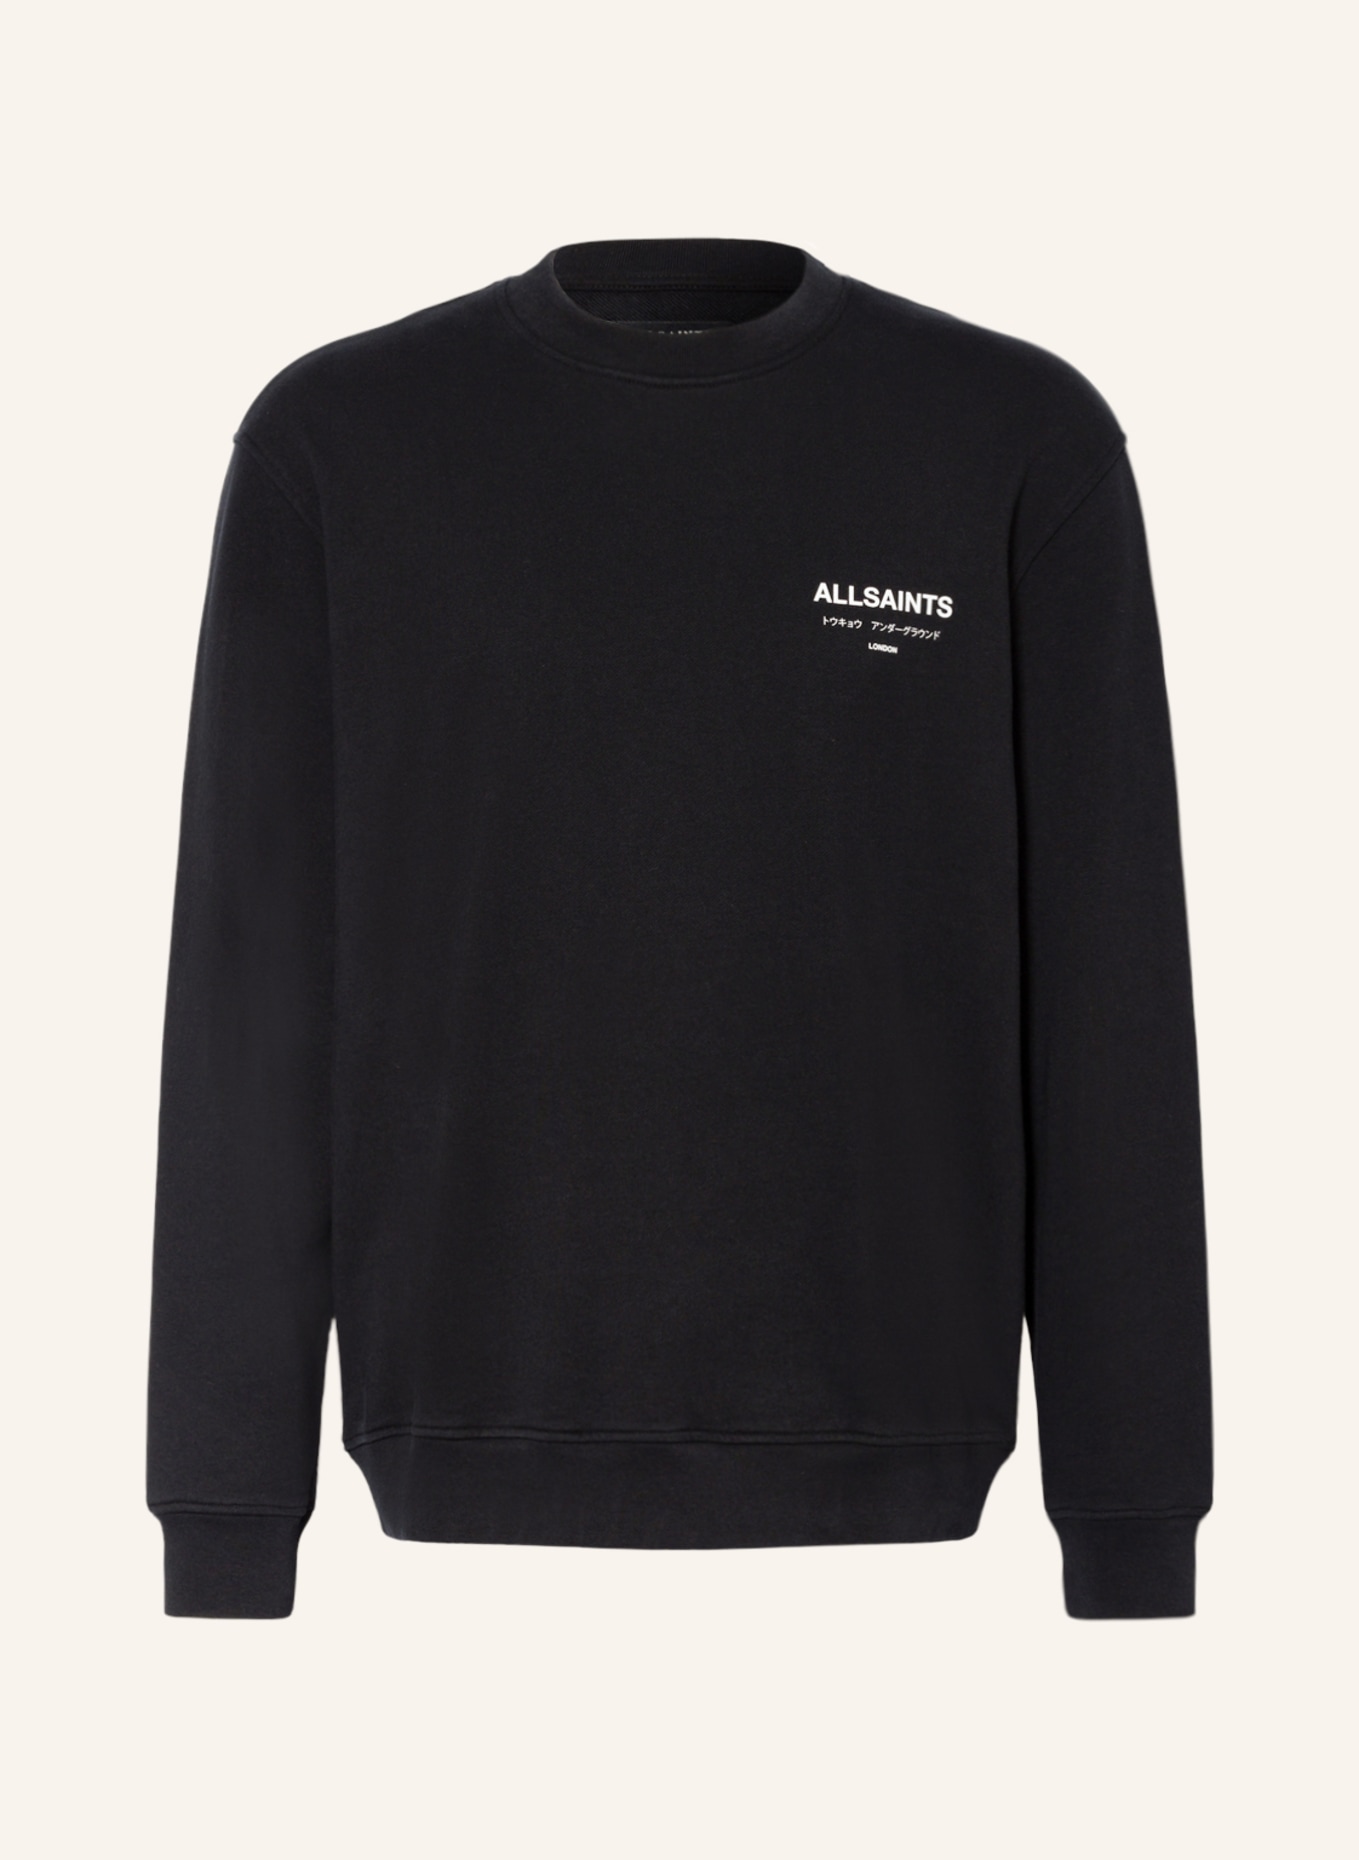 ALLSAINTS Sweatshirt UNDERGROUND, Farbe: SCHWARZ (Bild 1)